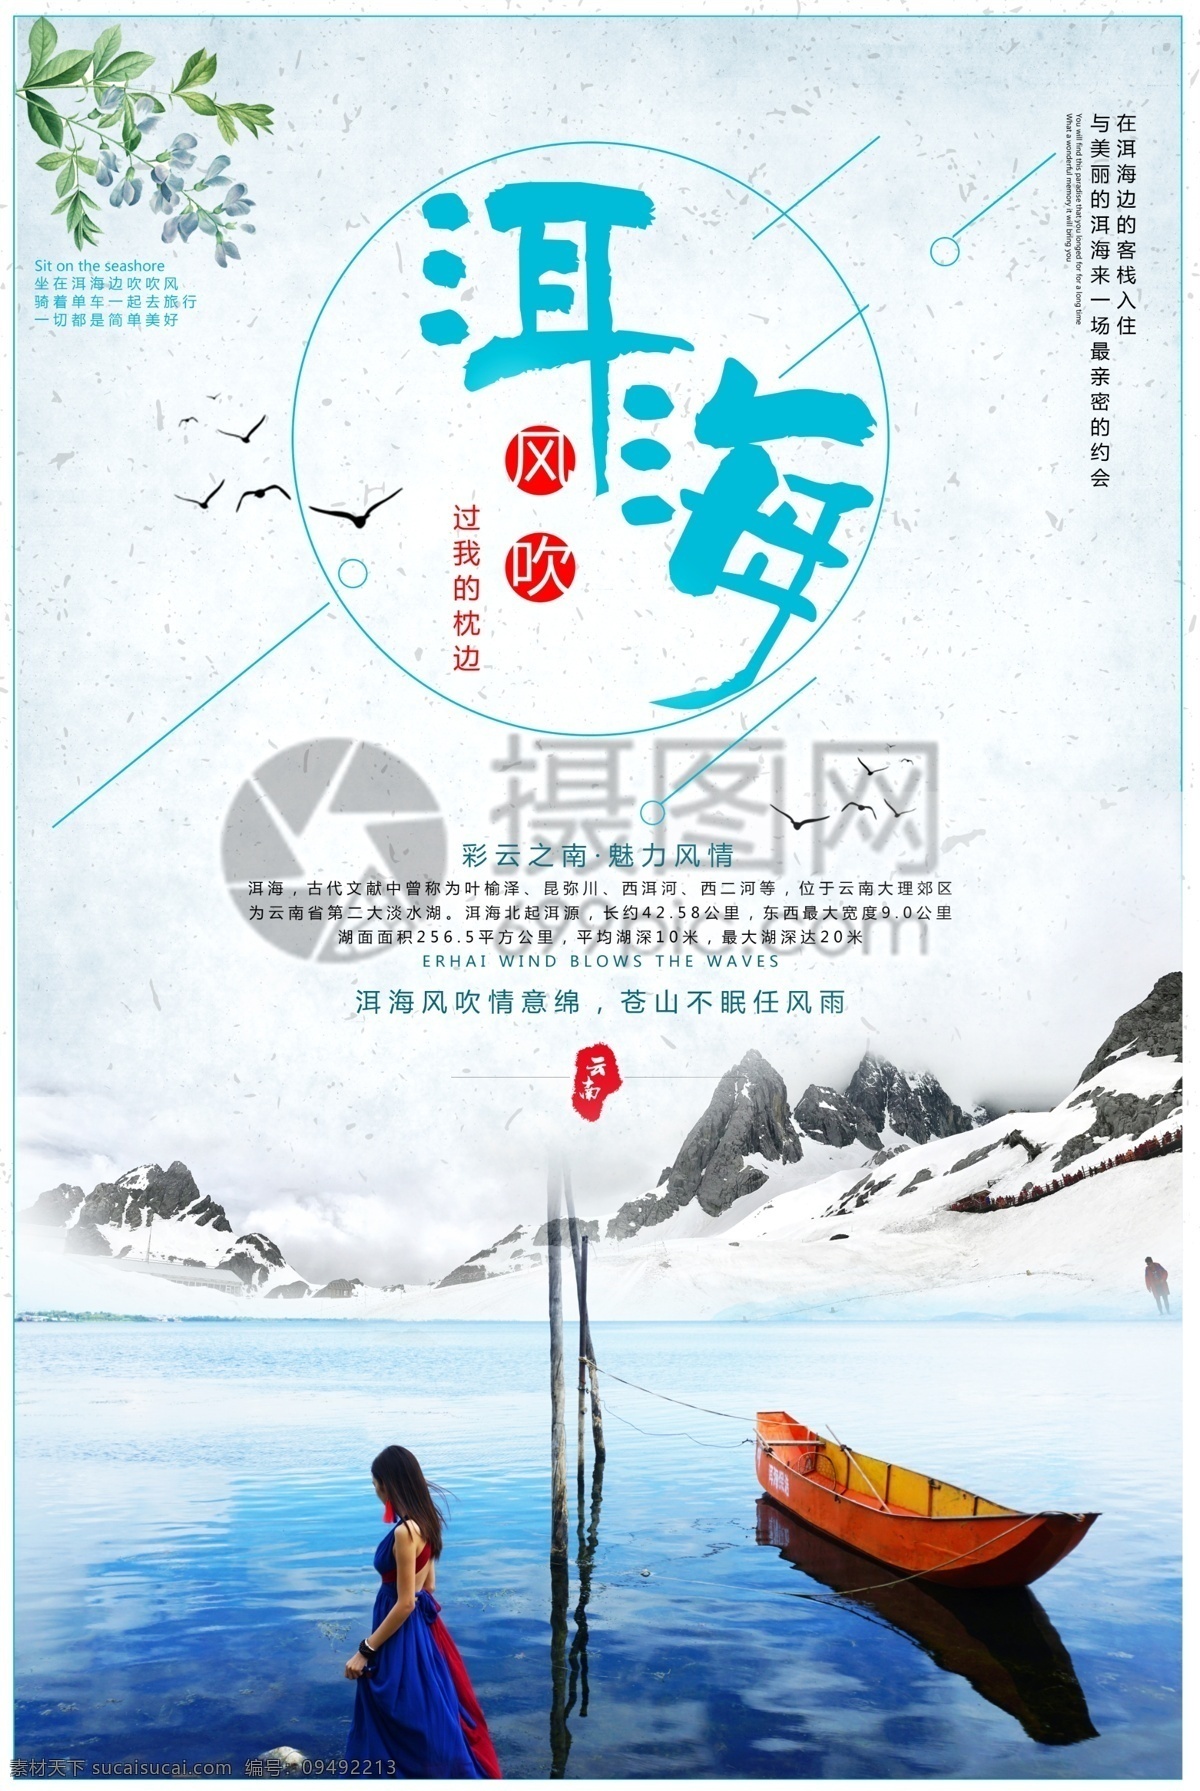 洱海旅行海报 洱海 旅游 云南 旅行 风景 简约 蓝色调 度假 旅游海报